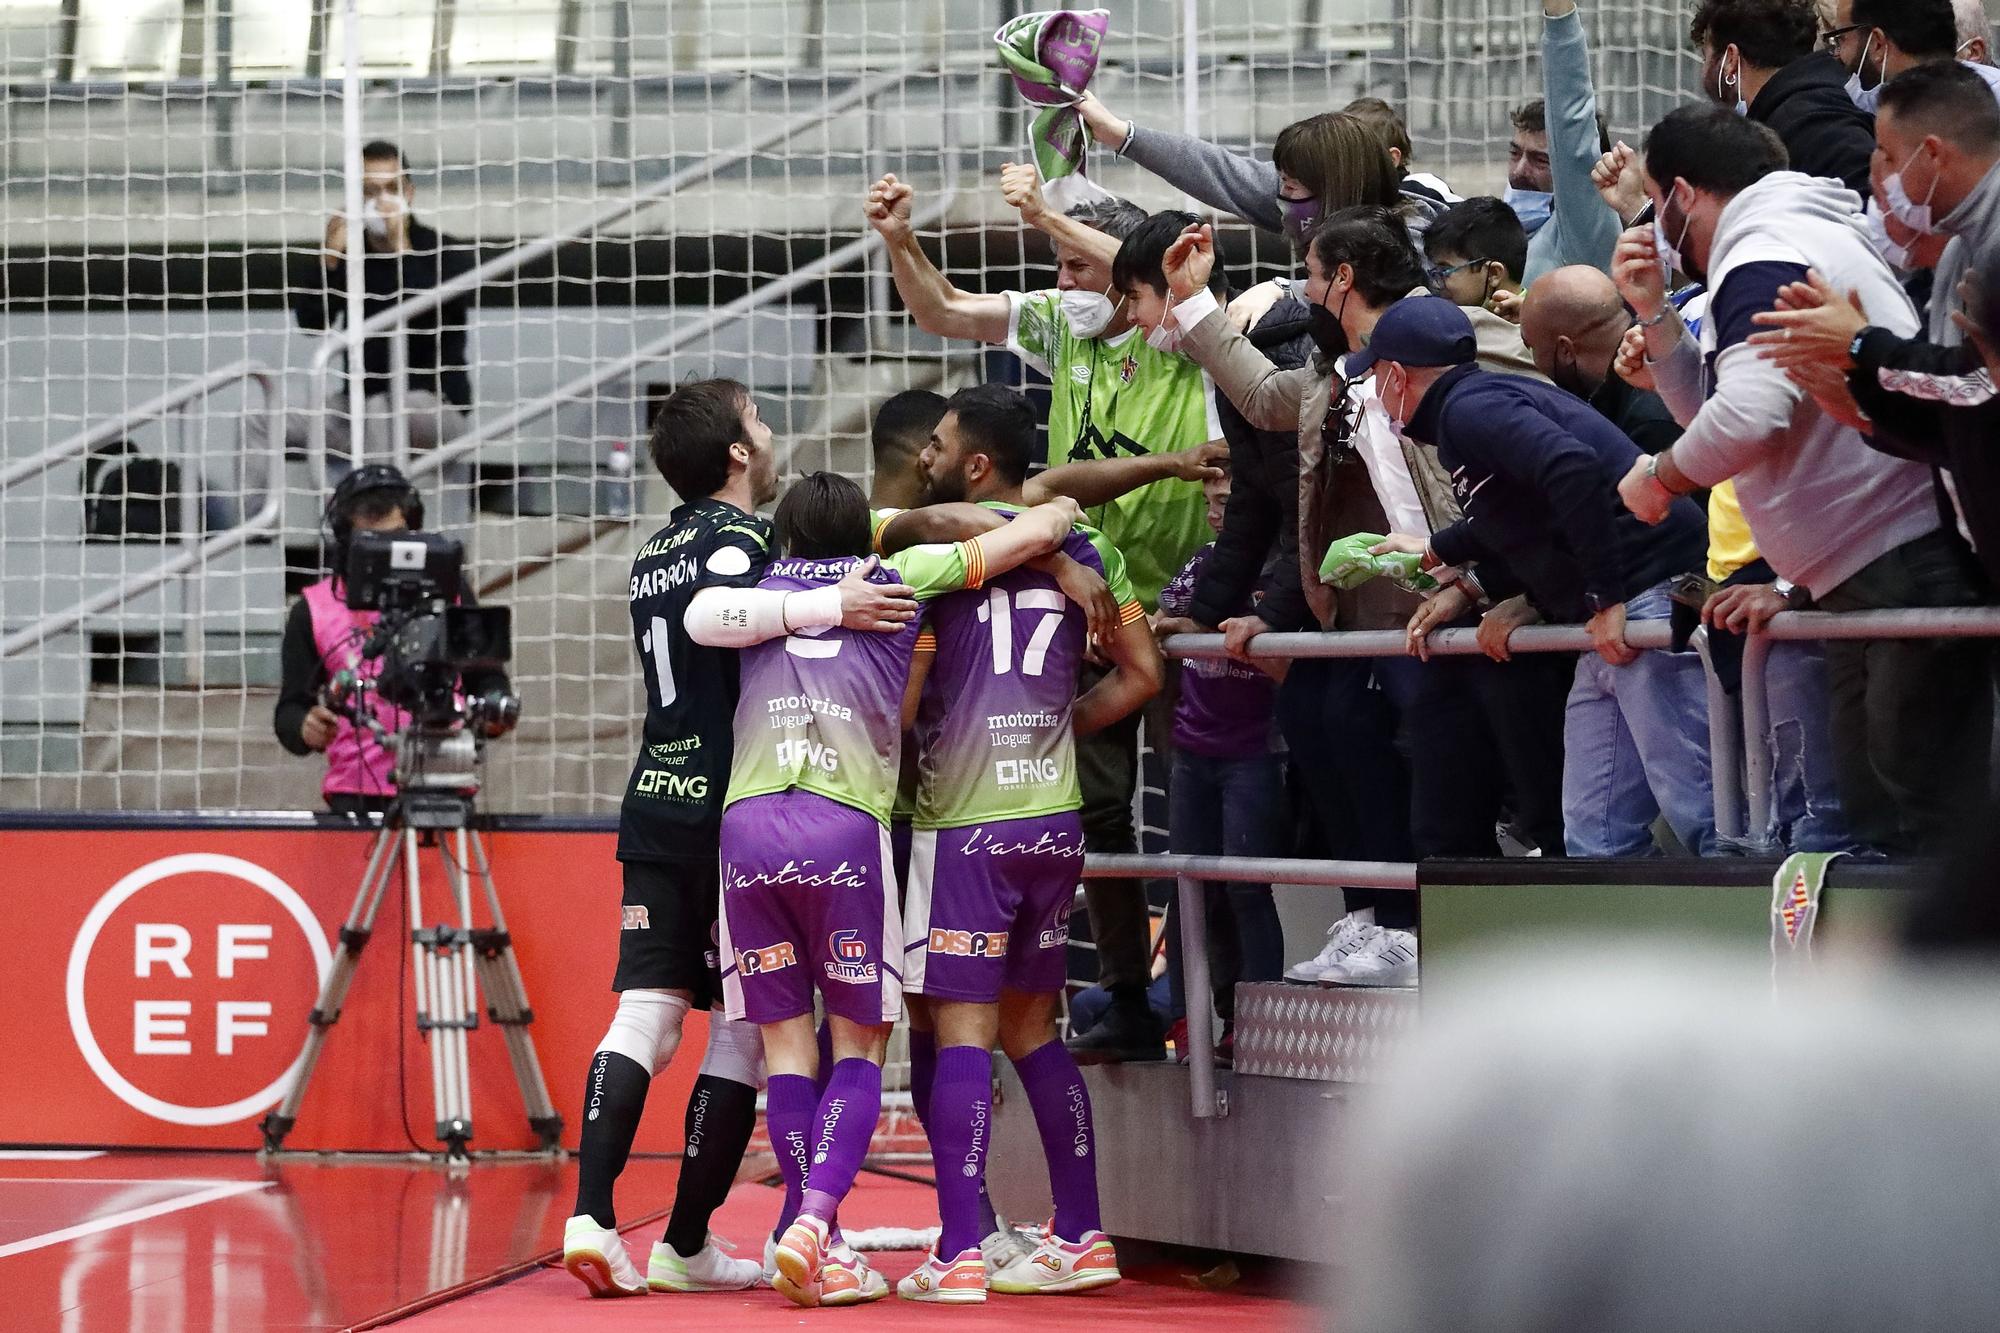 El Palma Futsal gana a ElPozo y jugará la final de la Supercopa